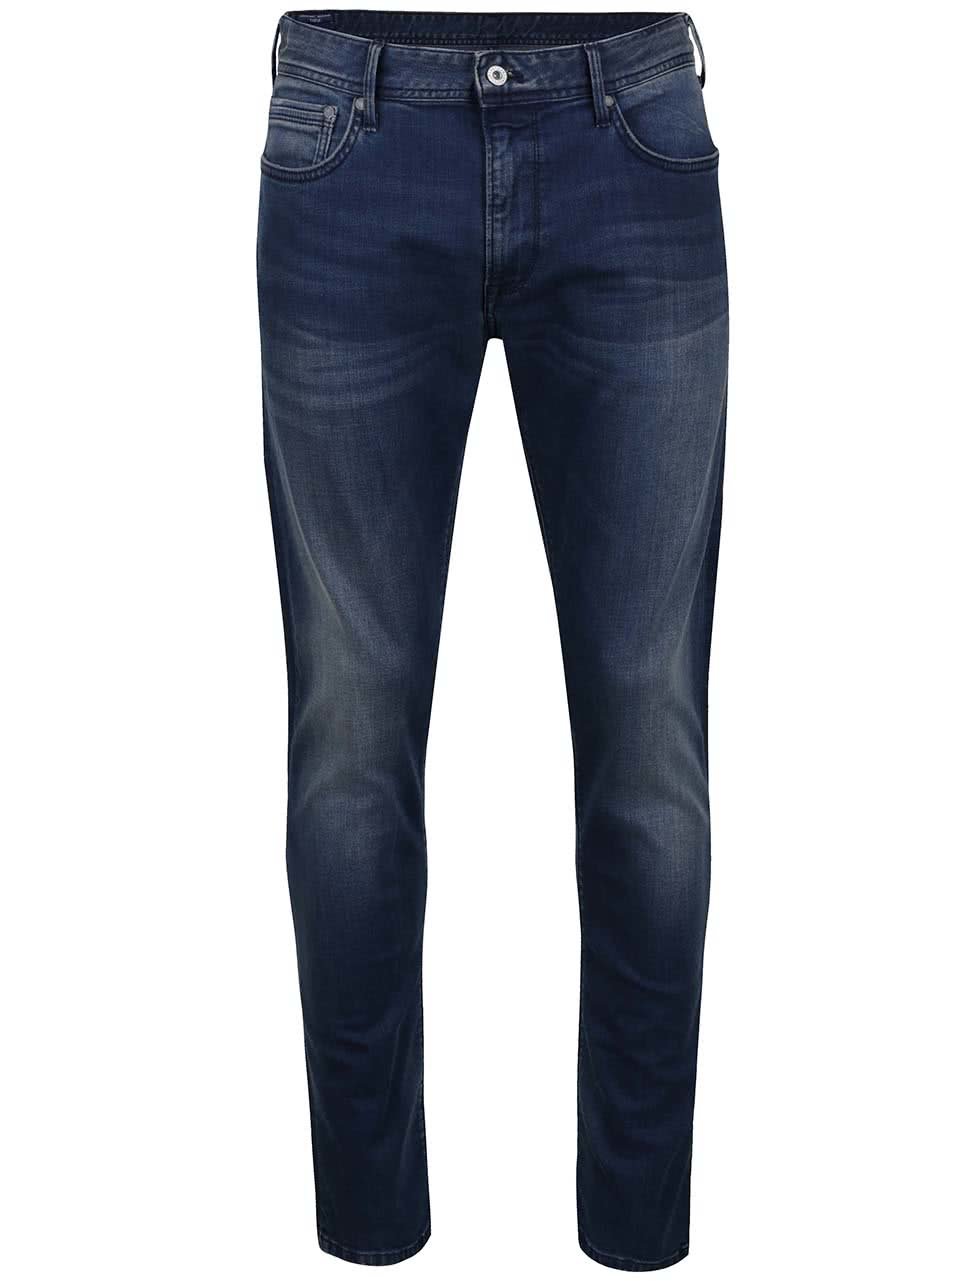 Tmavě modré pánské džíny Pepe Jeans Stanley